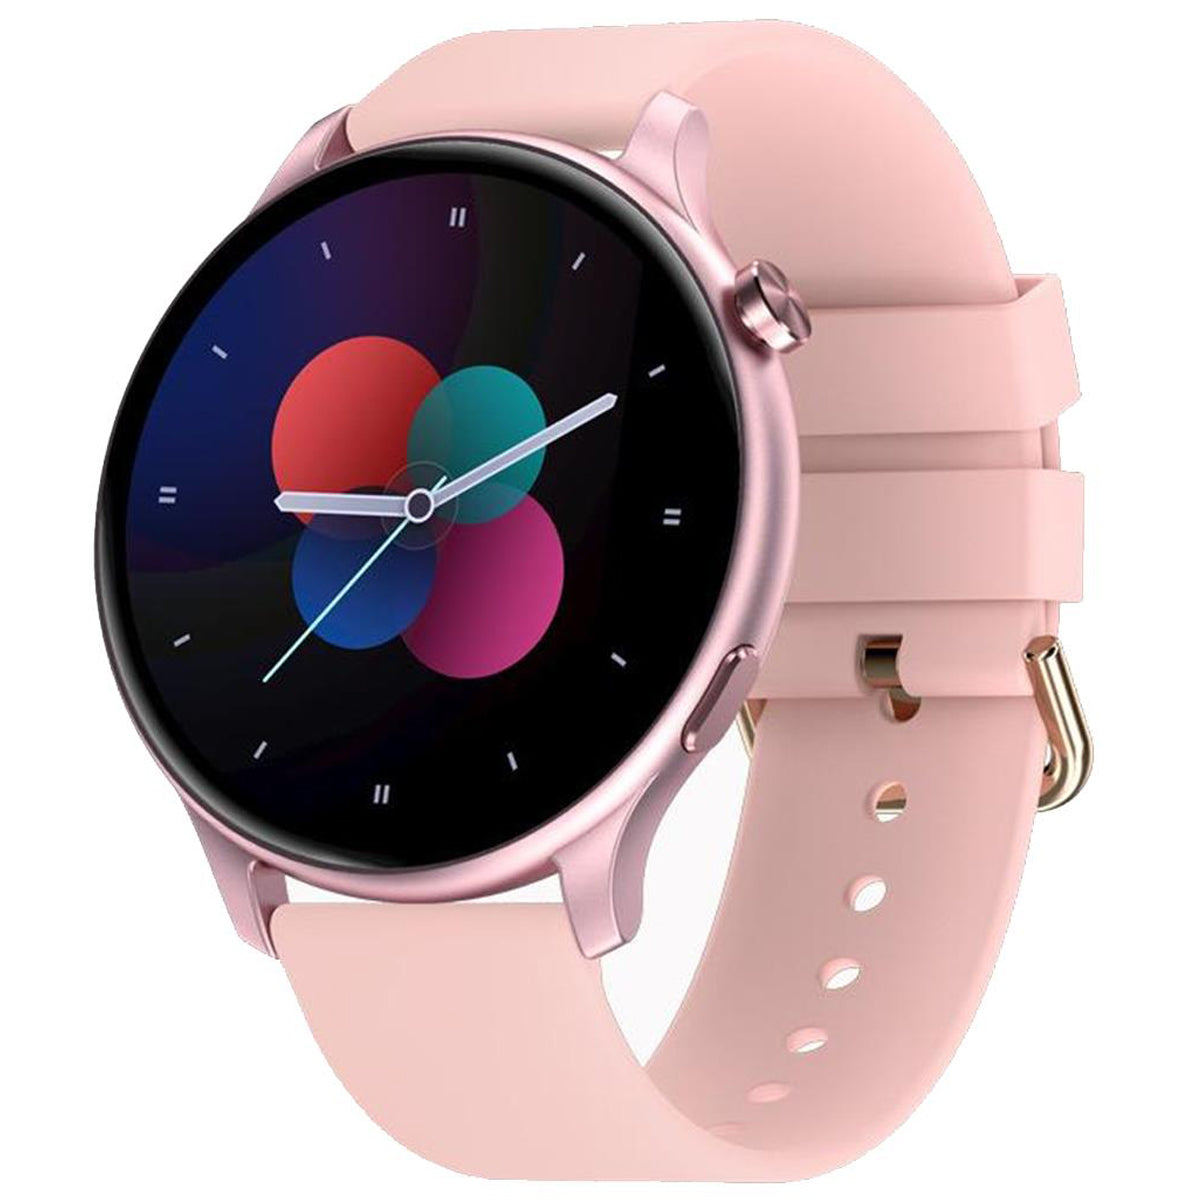 Fralugio Smart Watch Reloj Inteligente Gt3 Full Touch Hd Ips